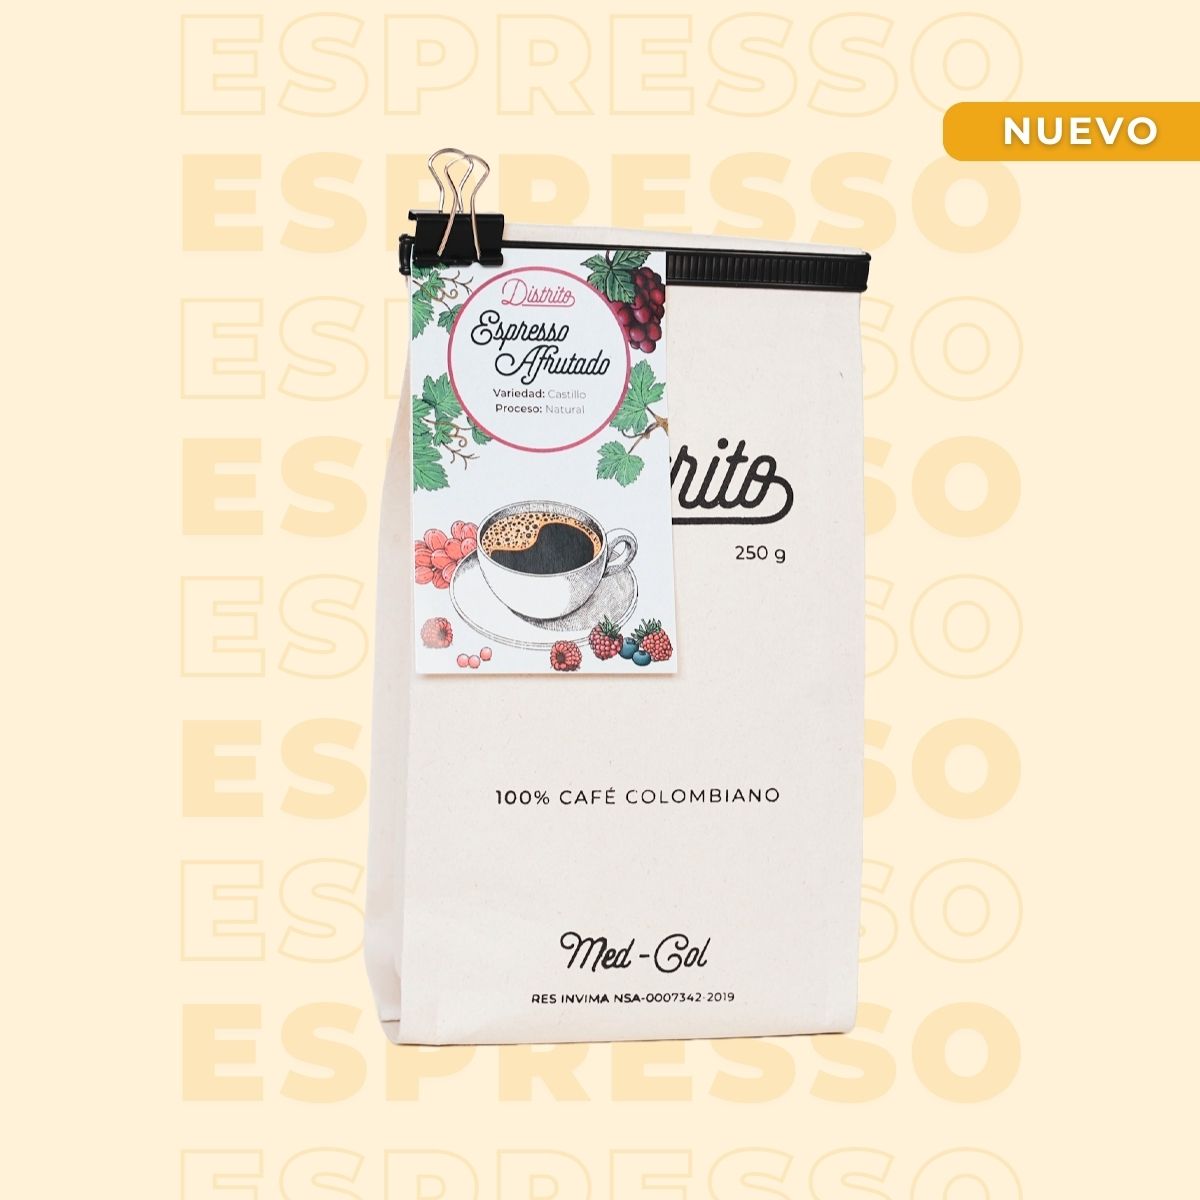 Espresso afrutado - Café Especial - Espresso Afrutado